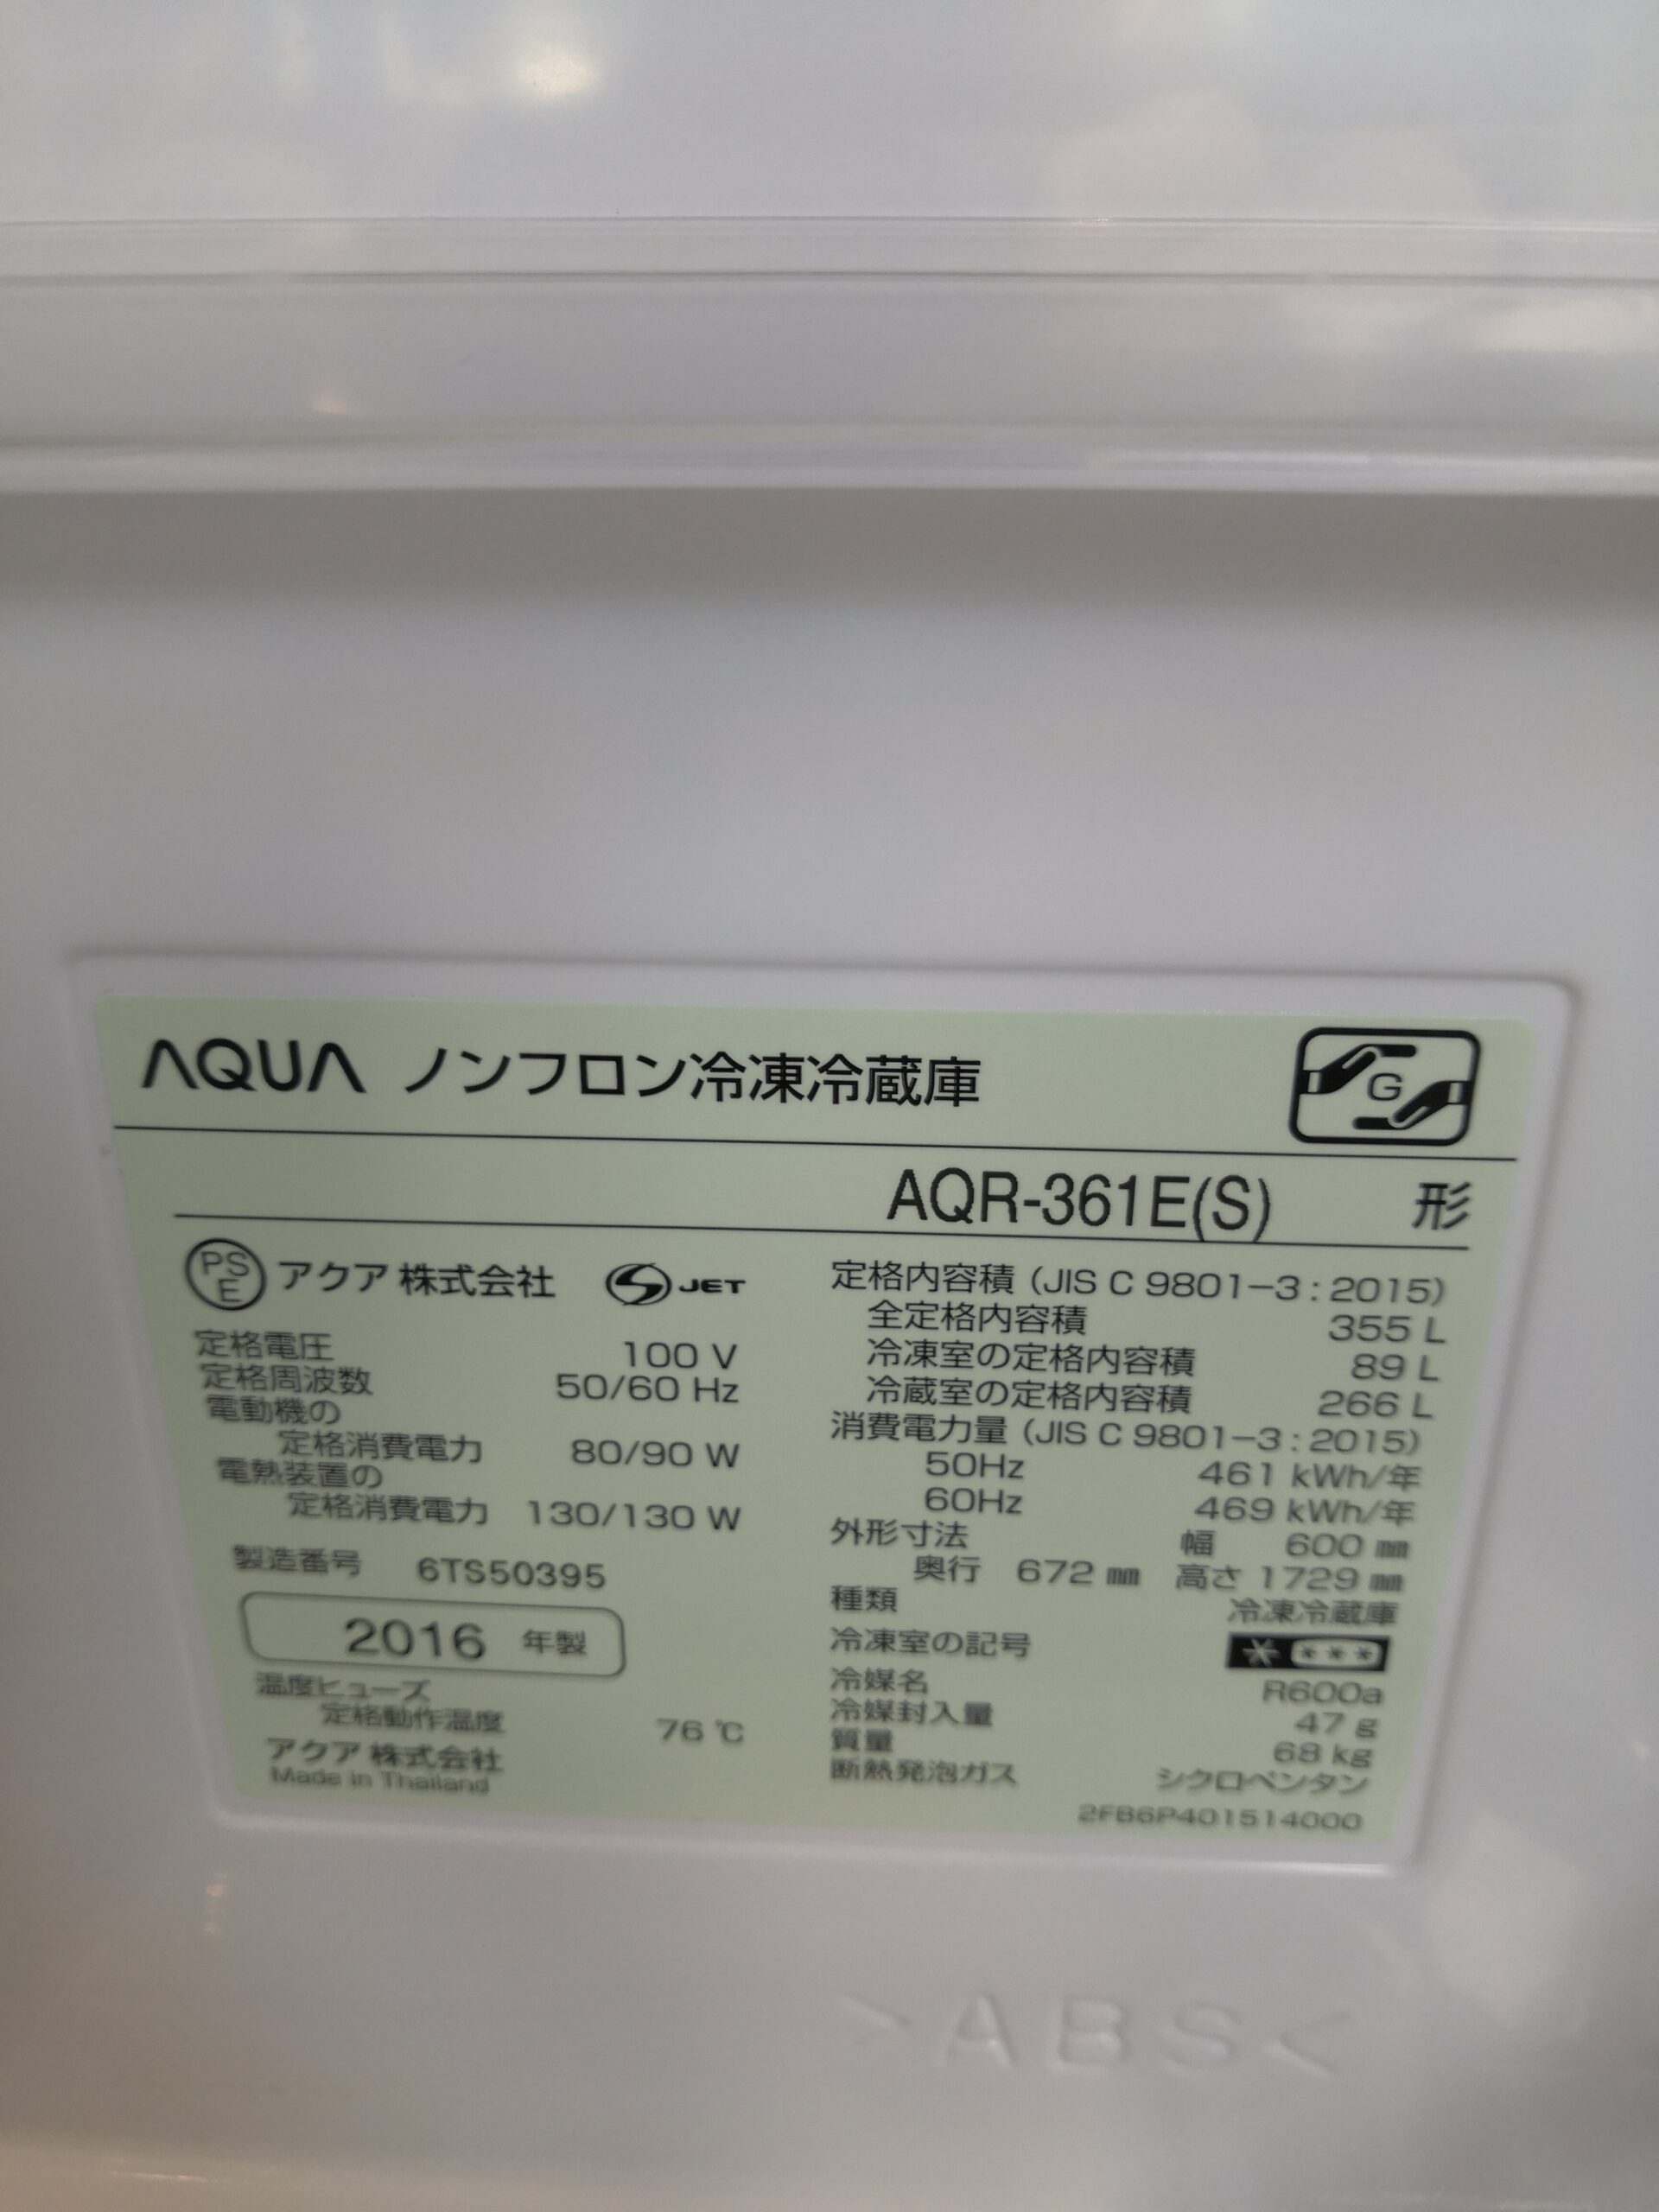 AQUA アクア 冷蔵庫 L 年製 買取しました。   愛知と岐阜の